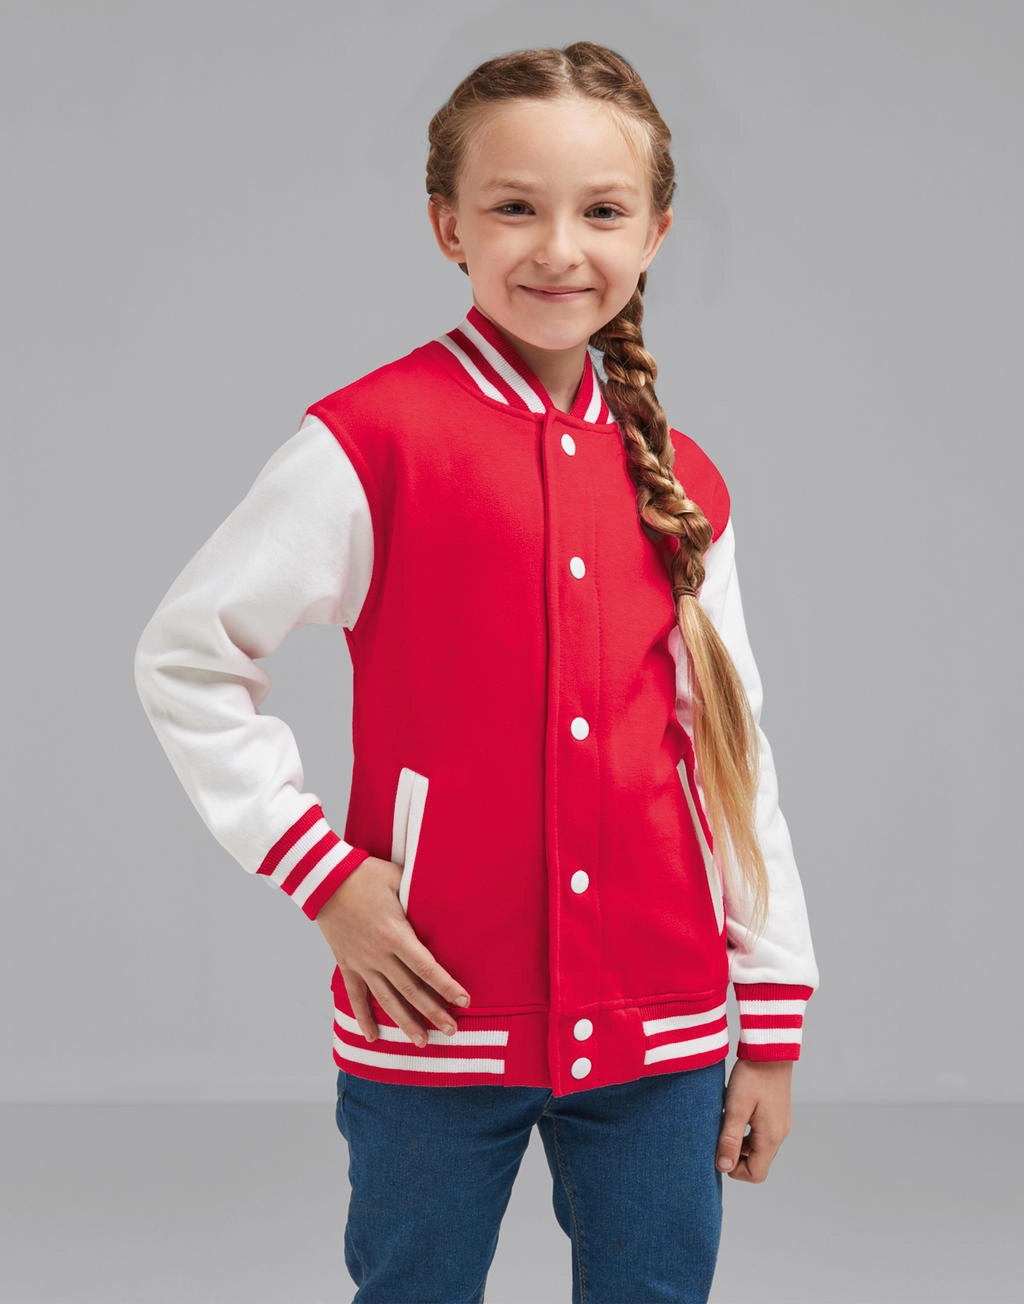 Junior Varsity Jacket zum Besticken und Bedrucken mit Ihren Logo, Schriftzug oder Motiv.